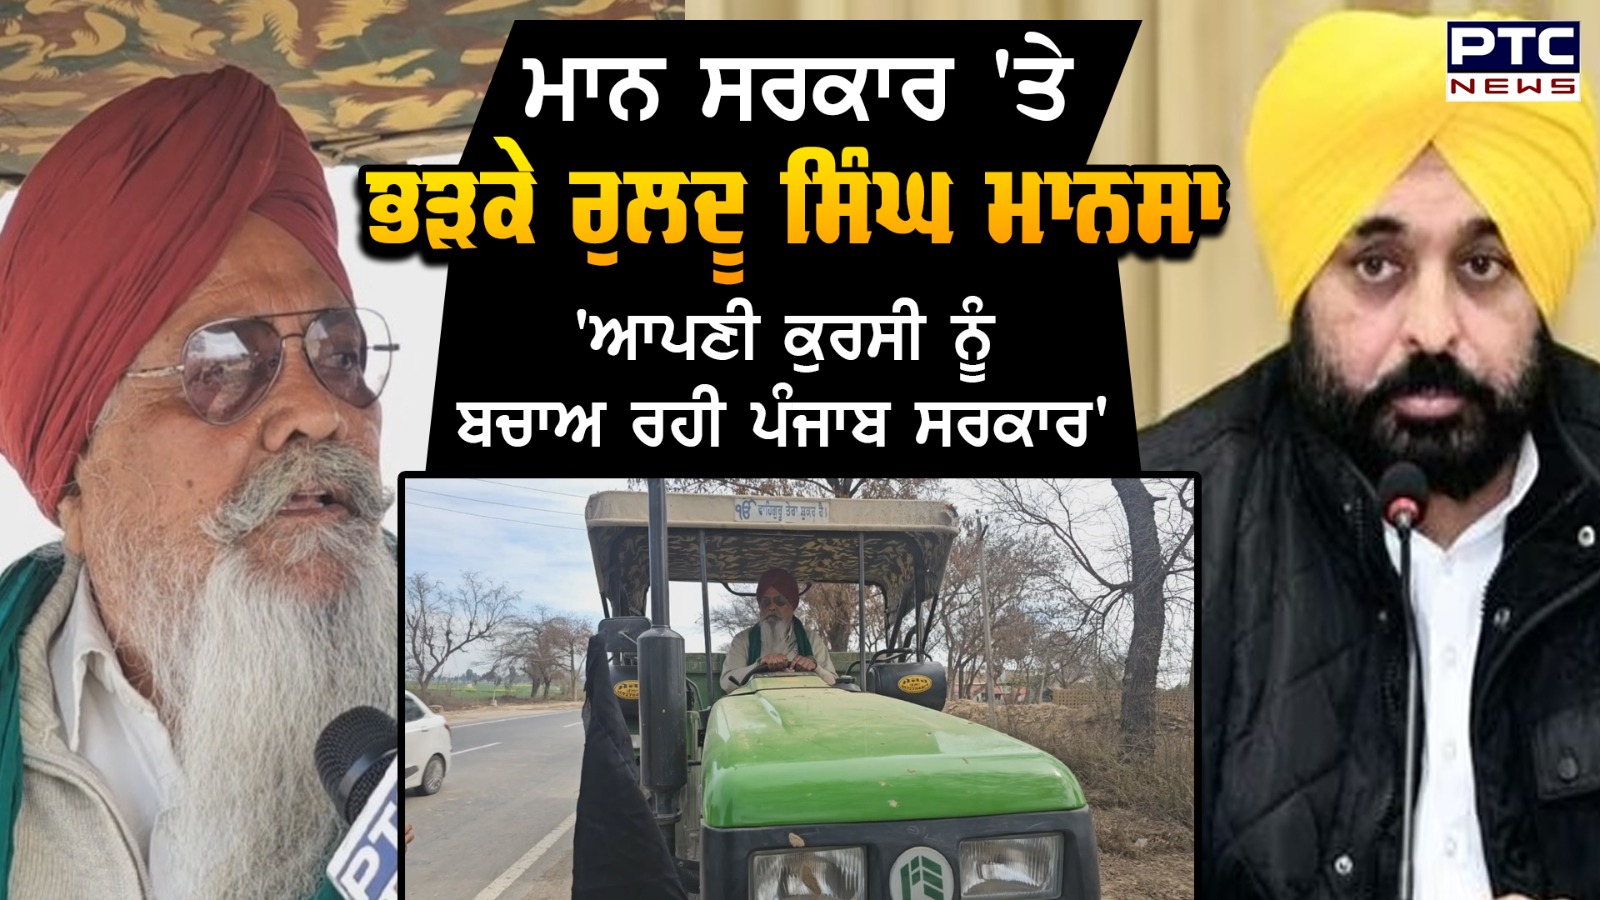 ਖ਼ੁਦ ਟਰੈਕਟਰ ਚਲਾ ਕੇ Ruldu Singh Mansa ਨੇ ਕਿਸਾਨਾਂ ਦੇ Tractor March 'ਚ ਦਿੱਤਾ ਸਾਥ